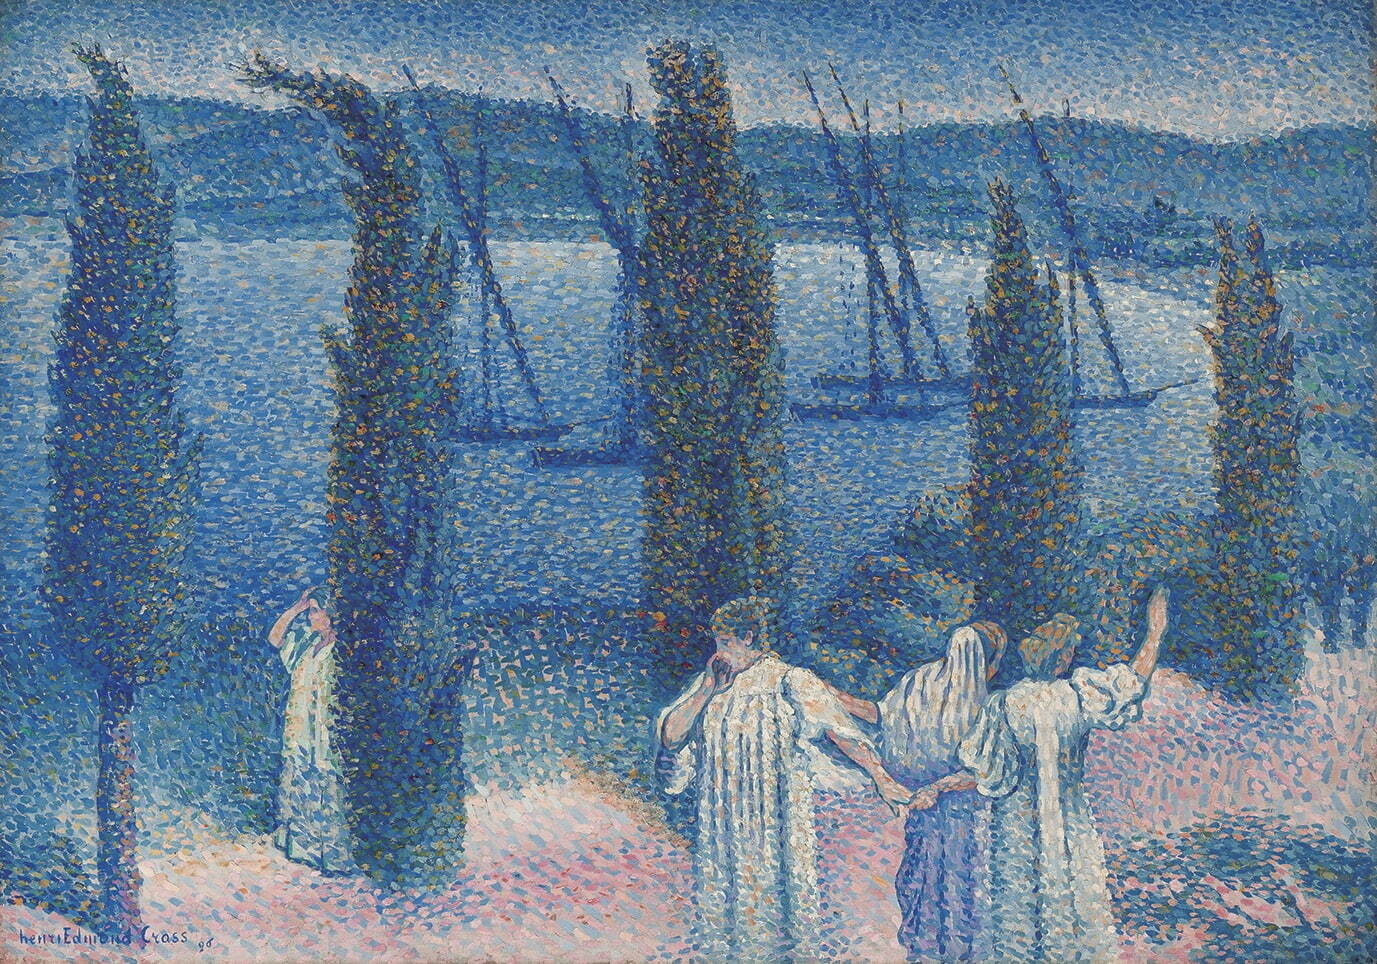 アンリ゠エドモン・クロス《糸杉のノクチューン》1896年
ASSOCIATION DES AMIS DU PETIT PALAIS, GENEVE